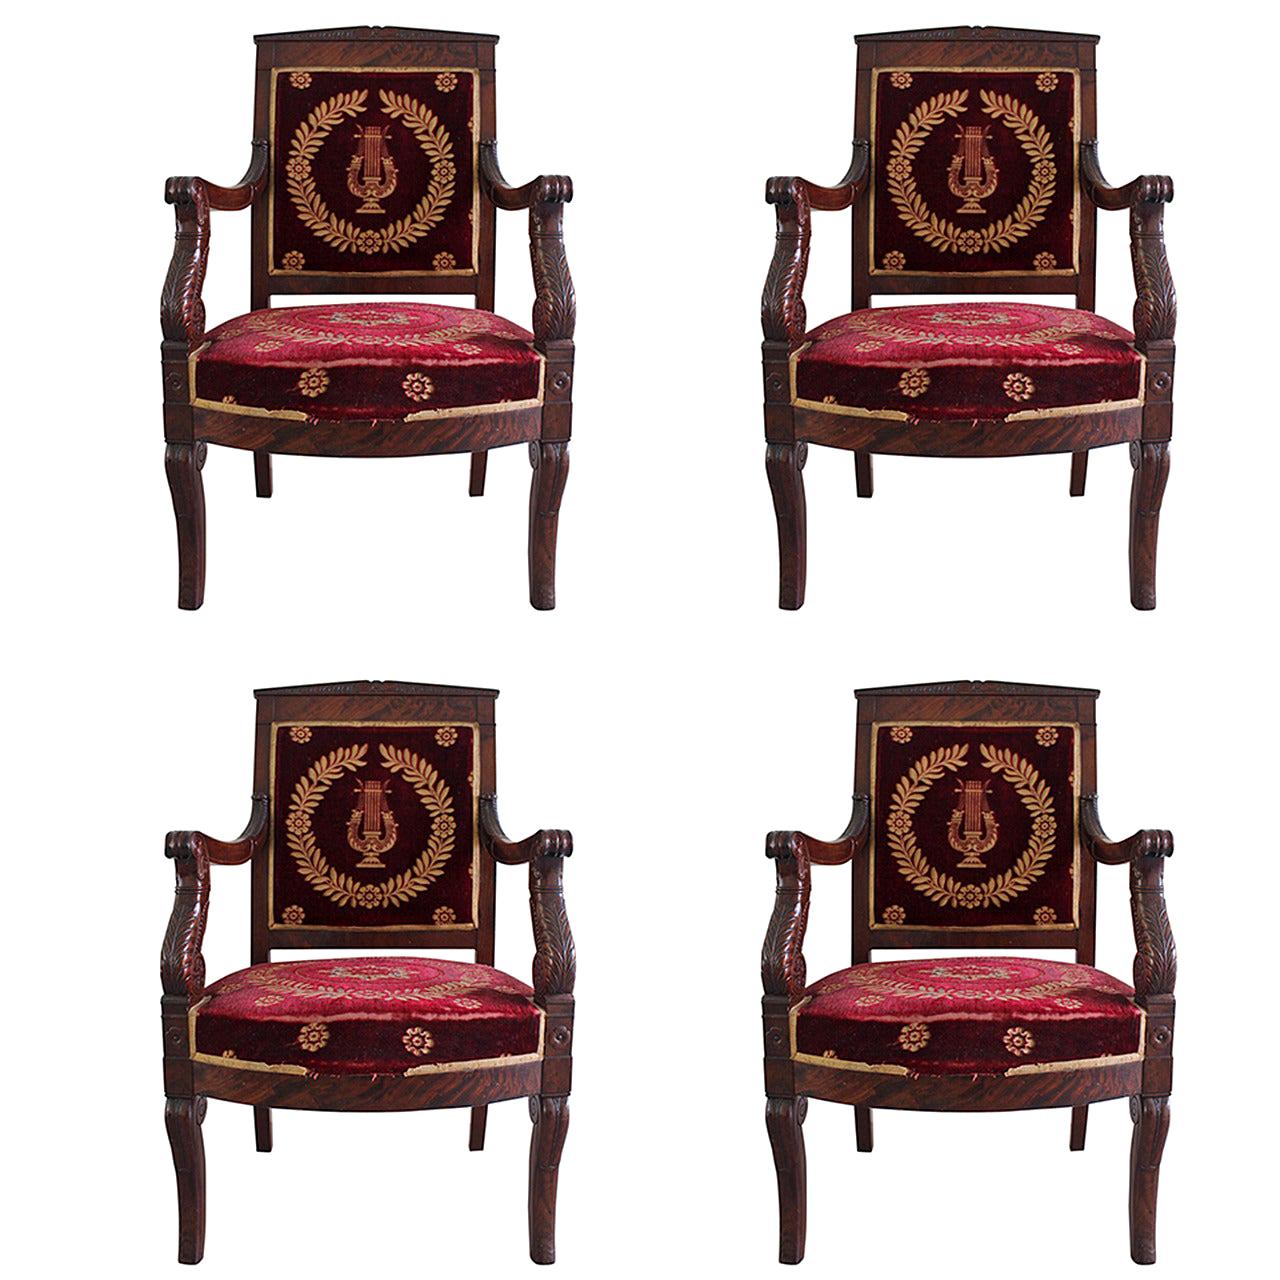 Ensemble de quatre fauteuils en acajou de style Empire français du XIXe siècle